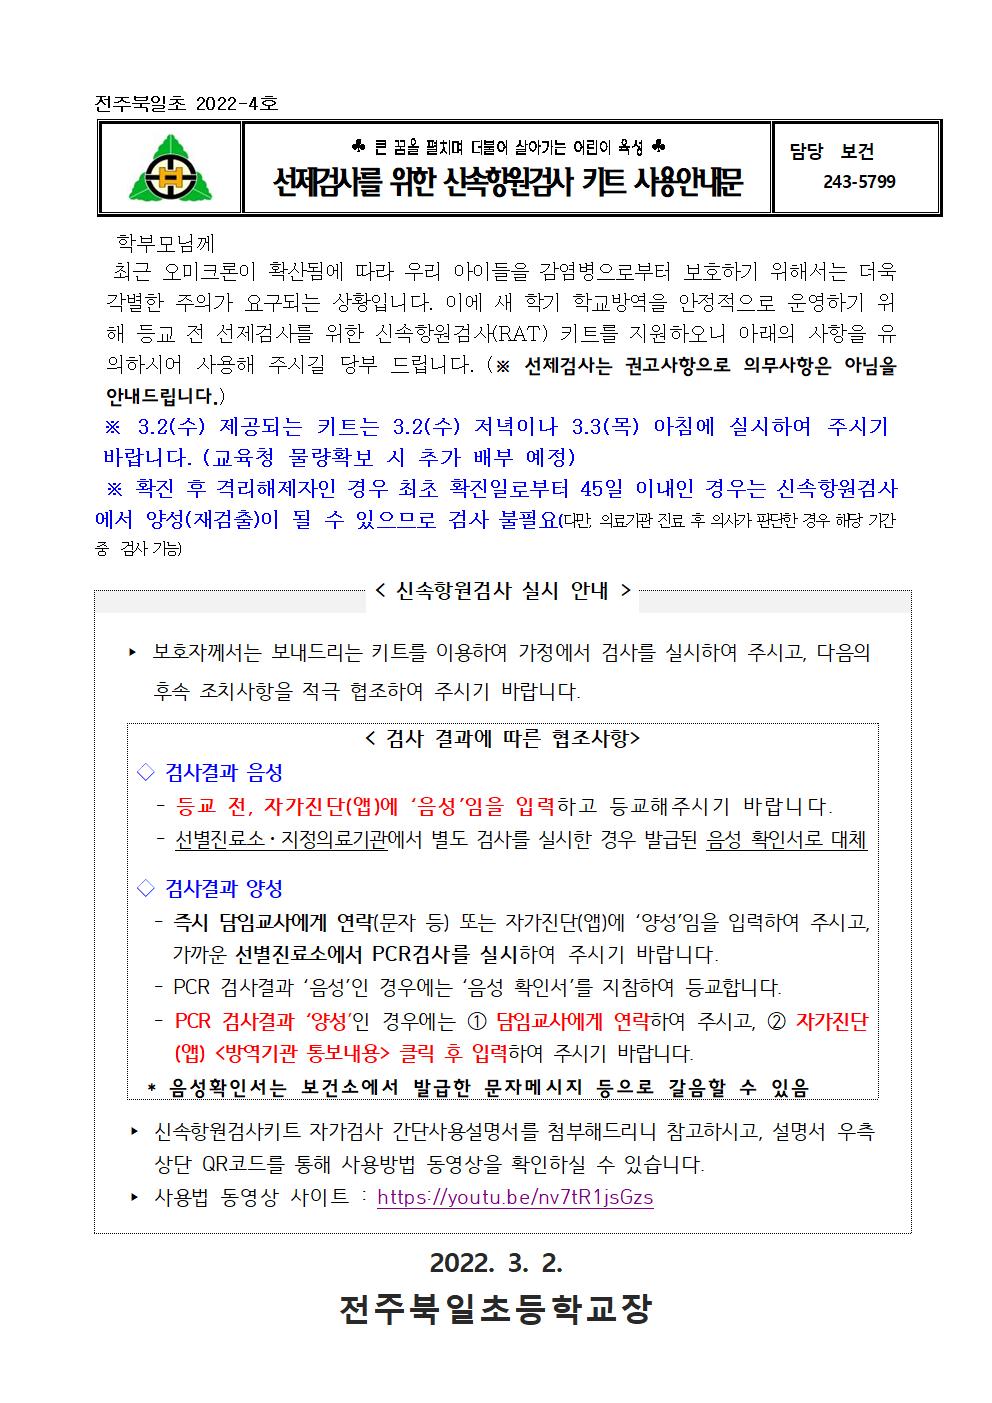 전주북일초 2022-4호 신속항원검사 실시 안내001